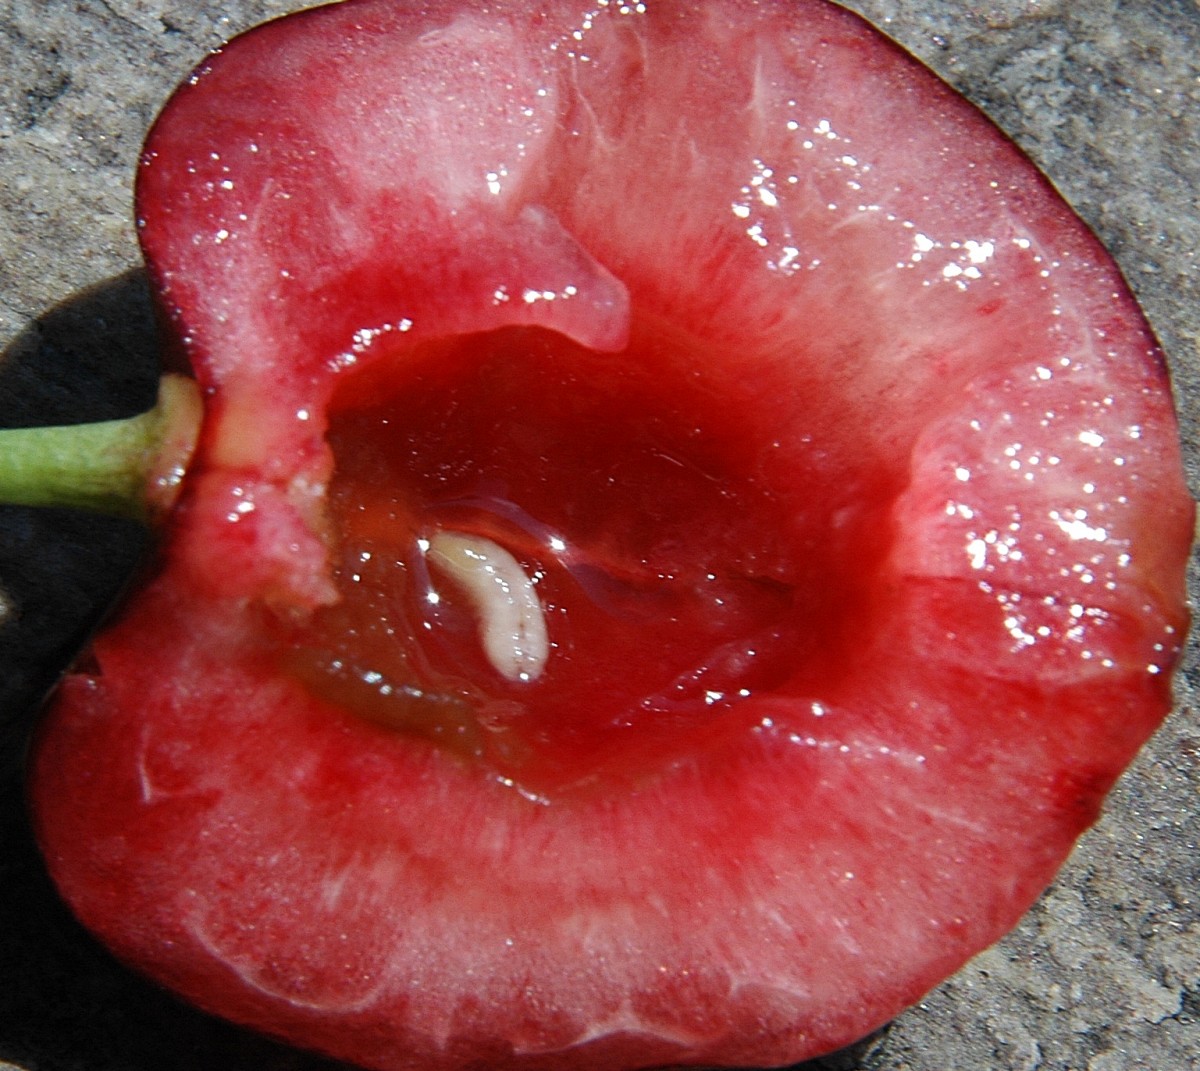 Развивающиеся личинки питаются мякотью плодов у косточек, загрязняя плоды экскрементами